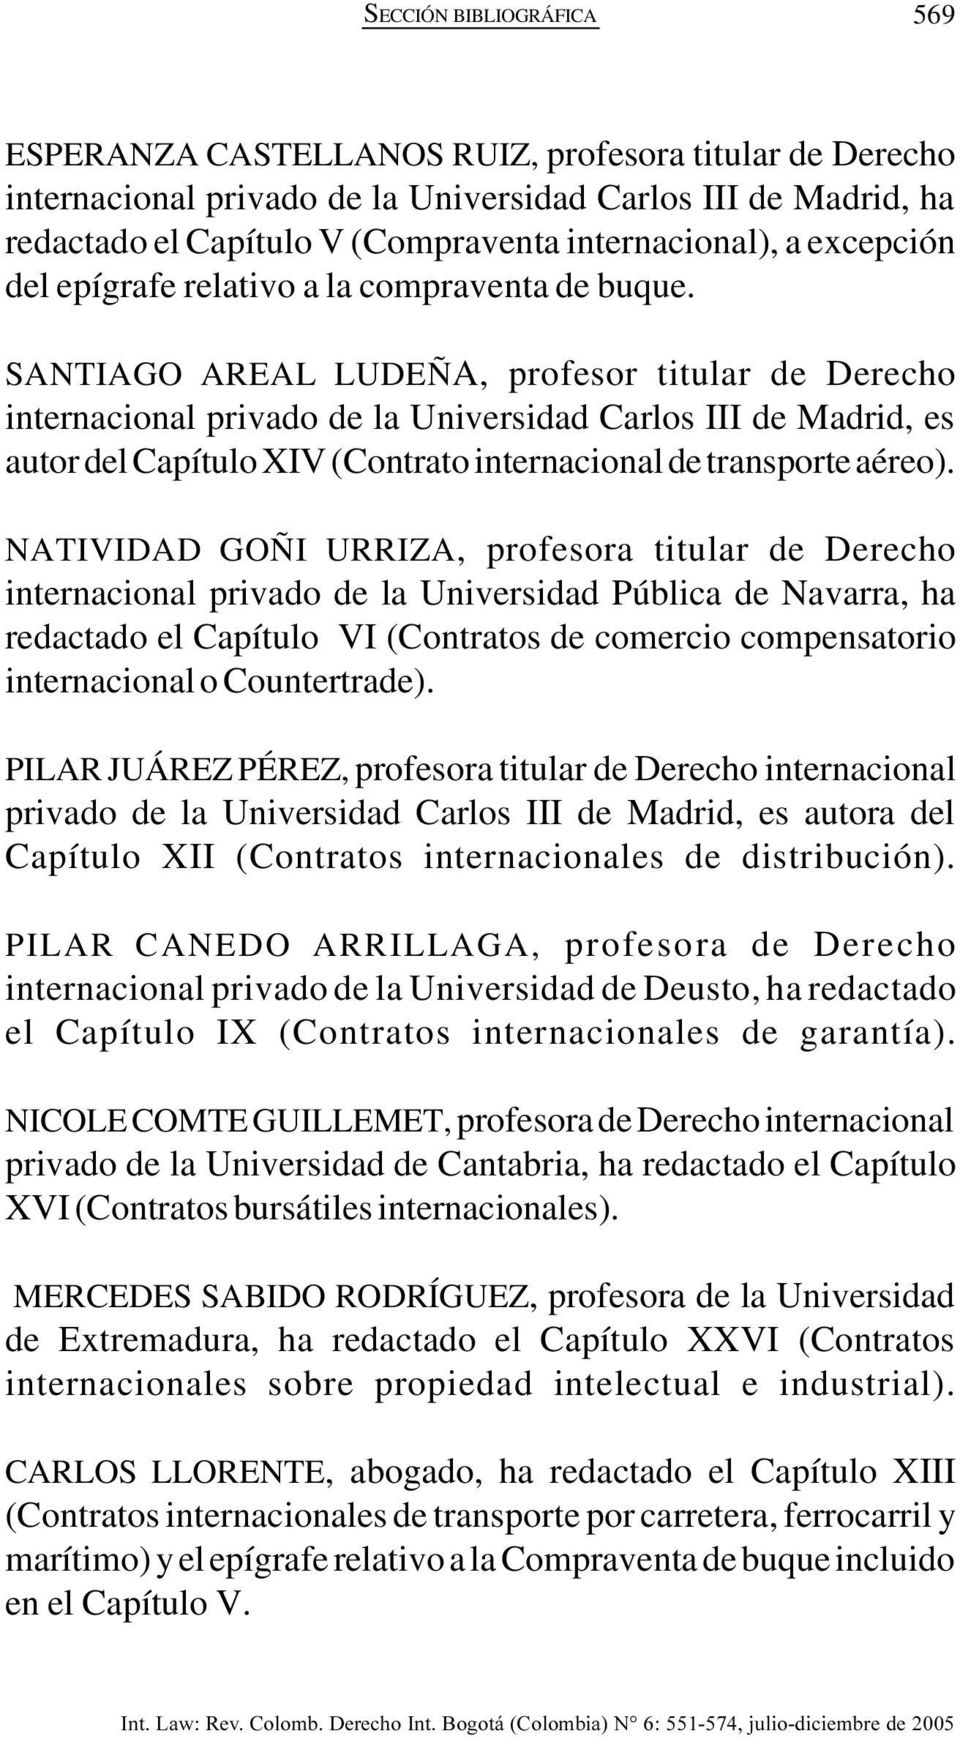 SANTIAGO AREAL LUDEÑA, profesor titular de Derecho internacional privado de la Universidad Carlos III de Madrid, es autor del Capítulo XIV (Contrato internacional de transporte aéreo).